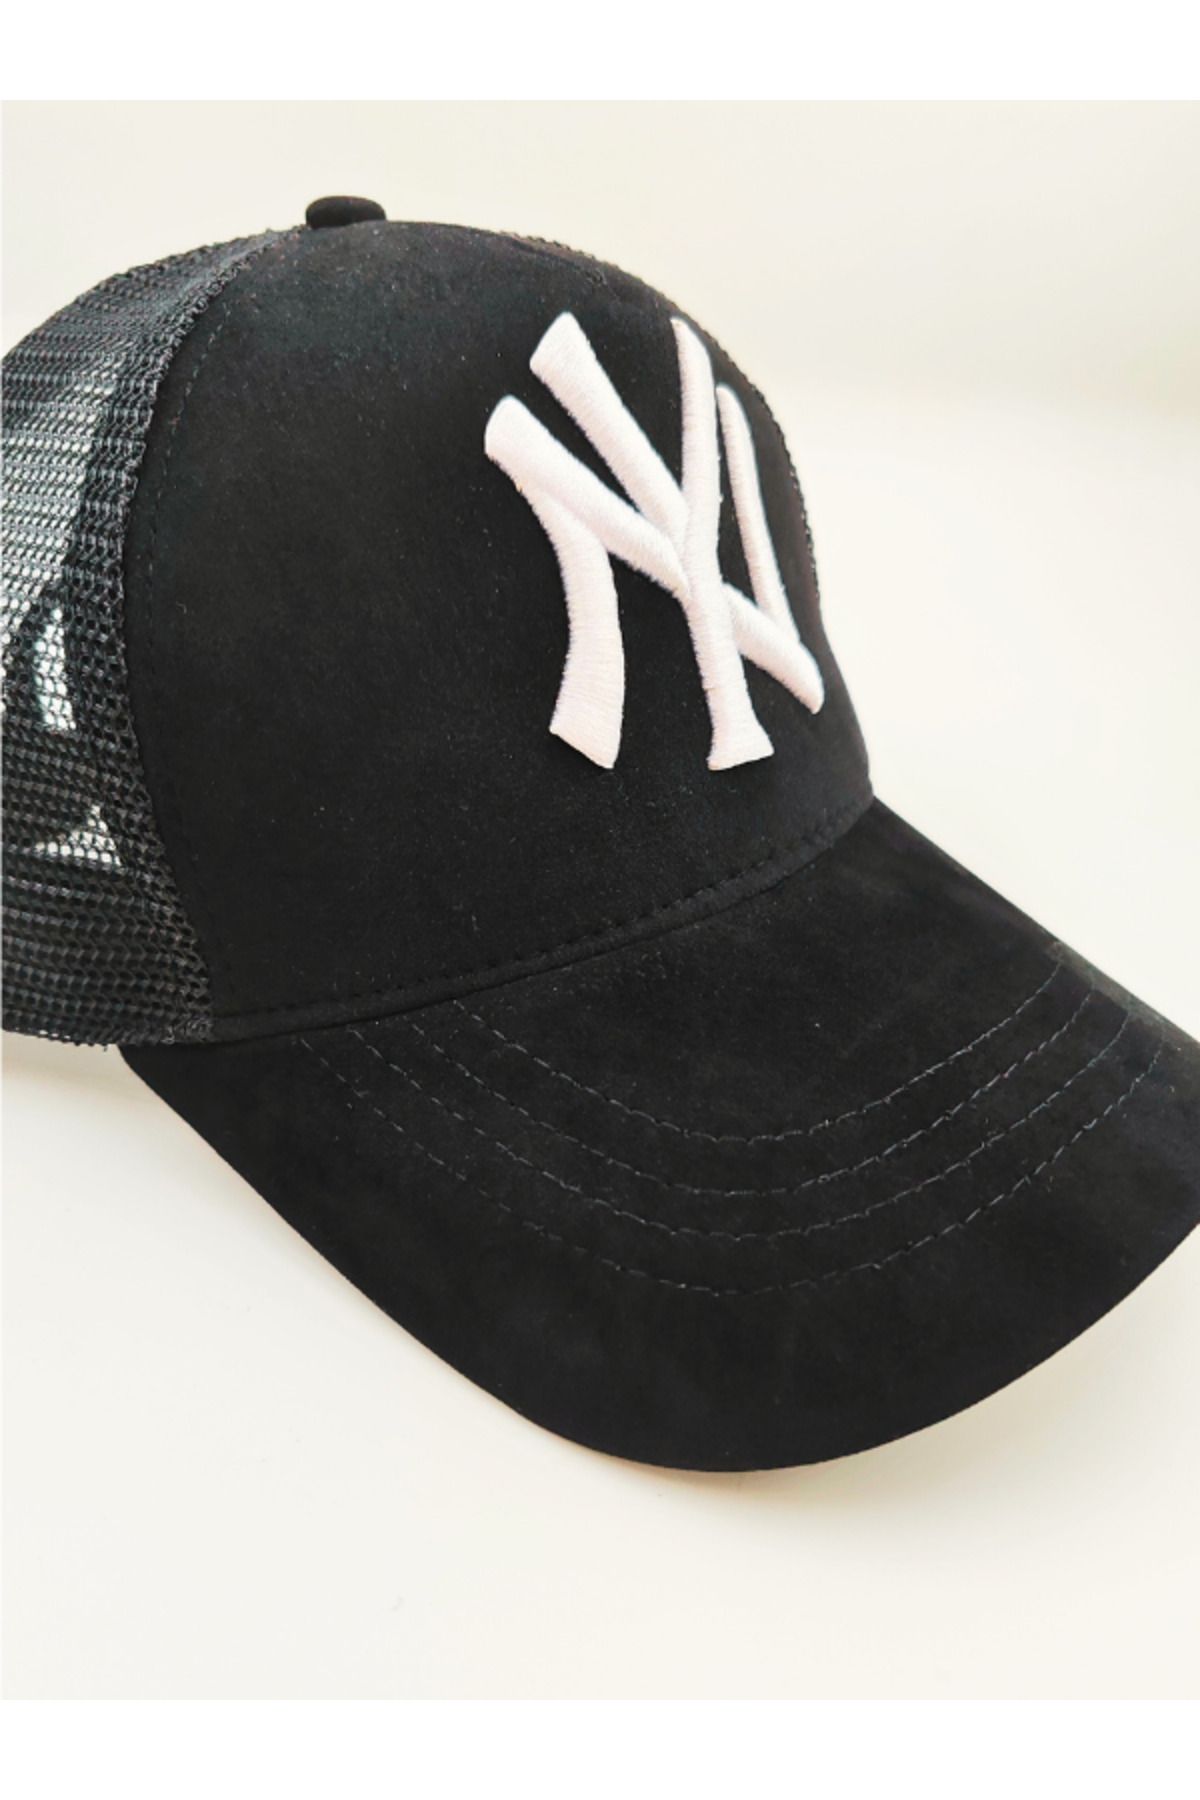 Shuttle Park Unisex Siyah Kadife Fashion Şapka 47 Brand Curved Brim New York Yankees Şapka